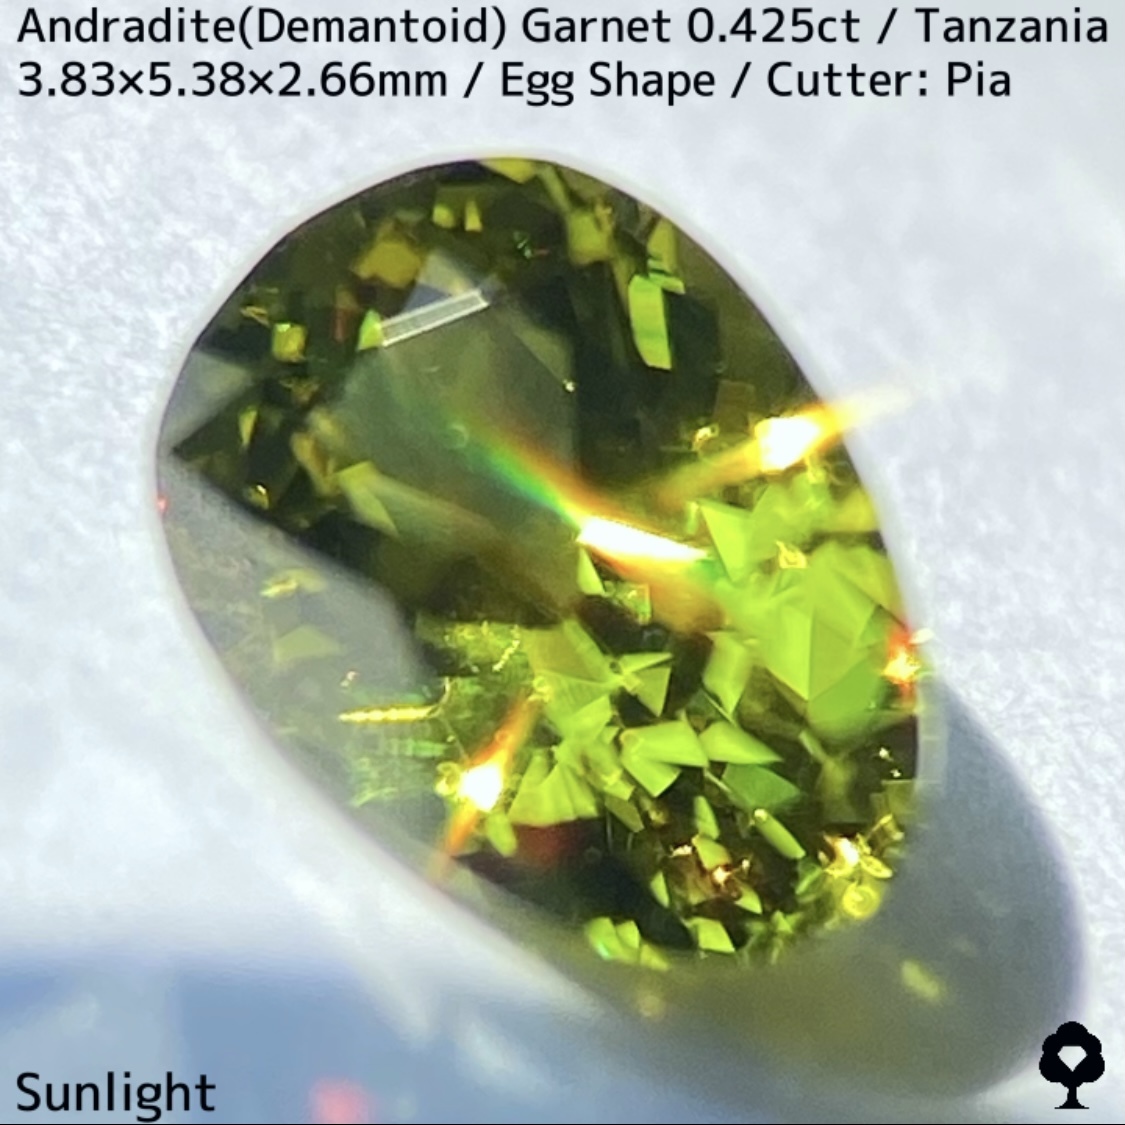 タンザニア産アンドラダイト(デマントイド)ガーネット0.425ct★程よい濃さの美グリーンから煌めき止まらないキュートなエッグシェイプ_画像5